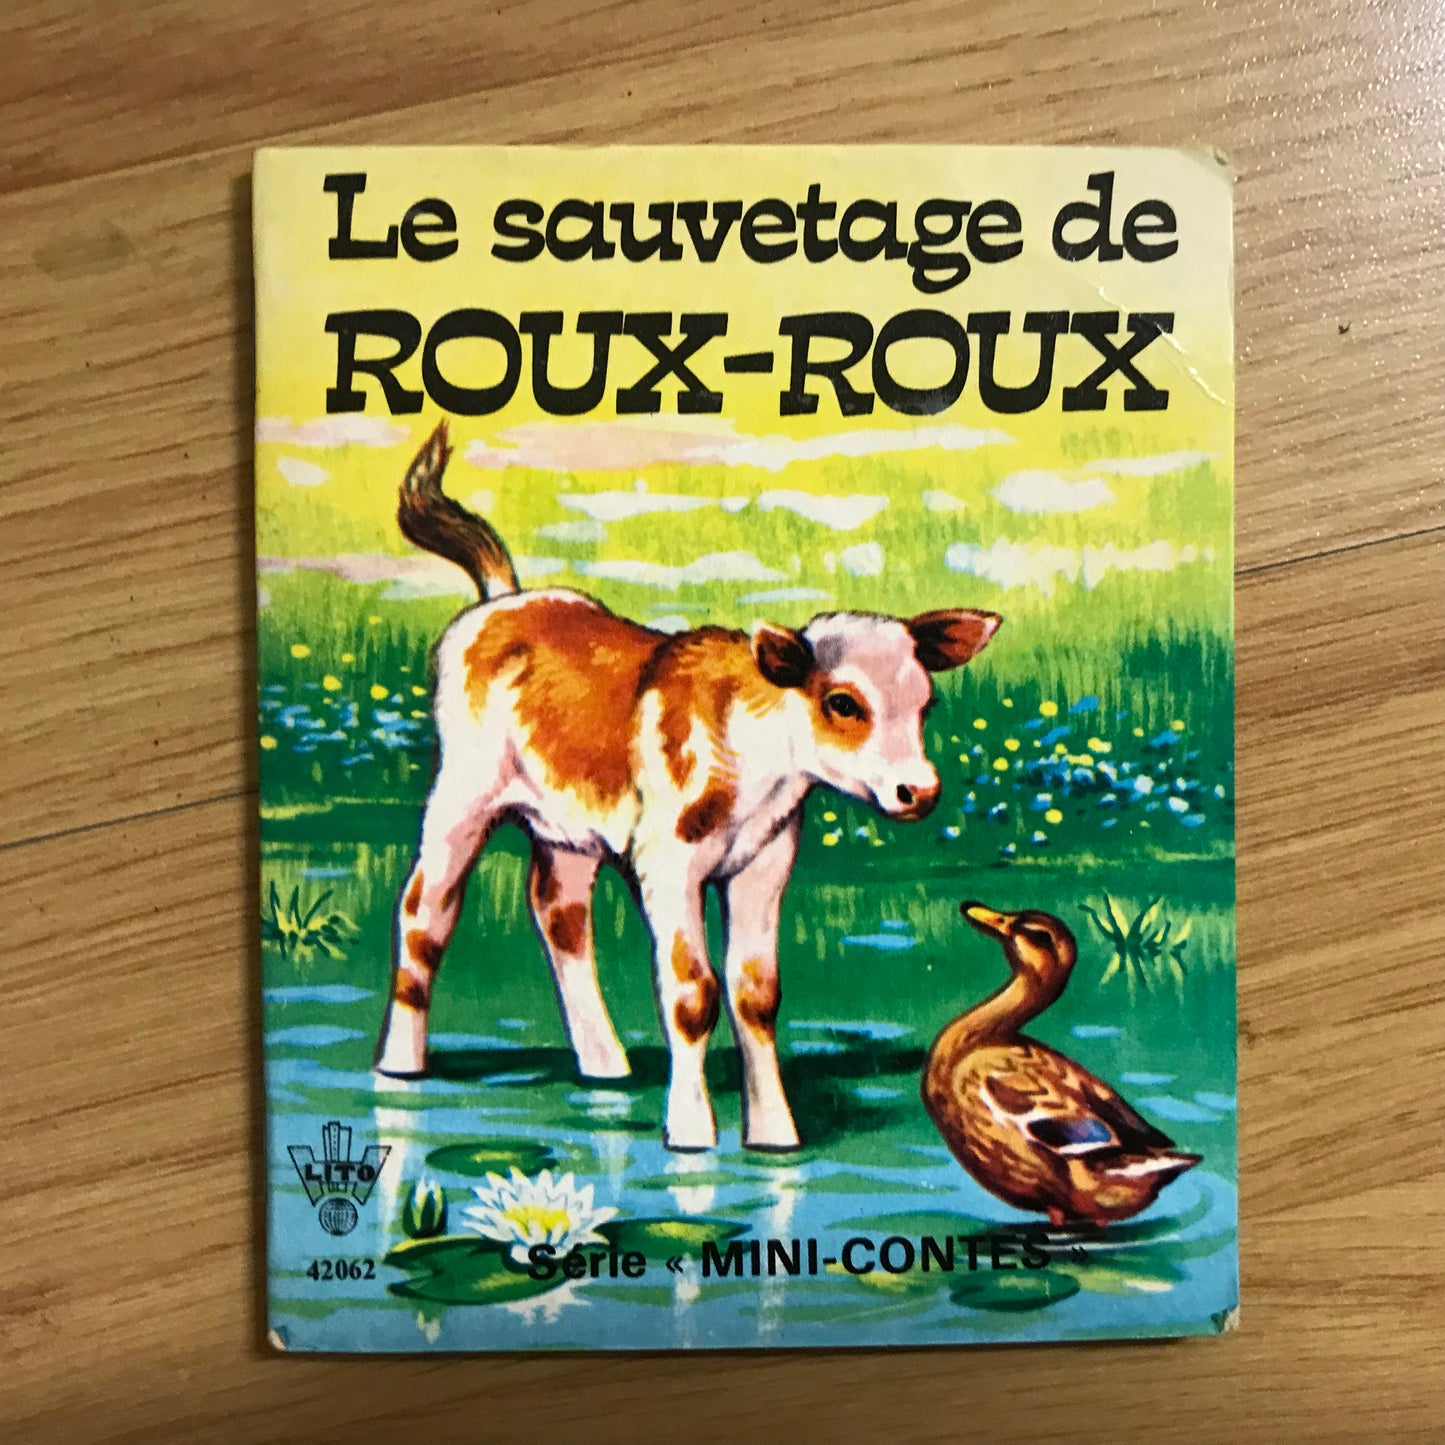 Maury, Claire - Le sauvetage de Roux-roux